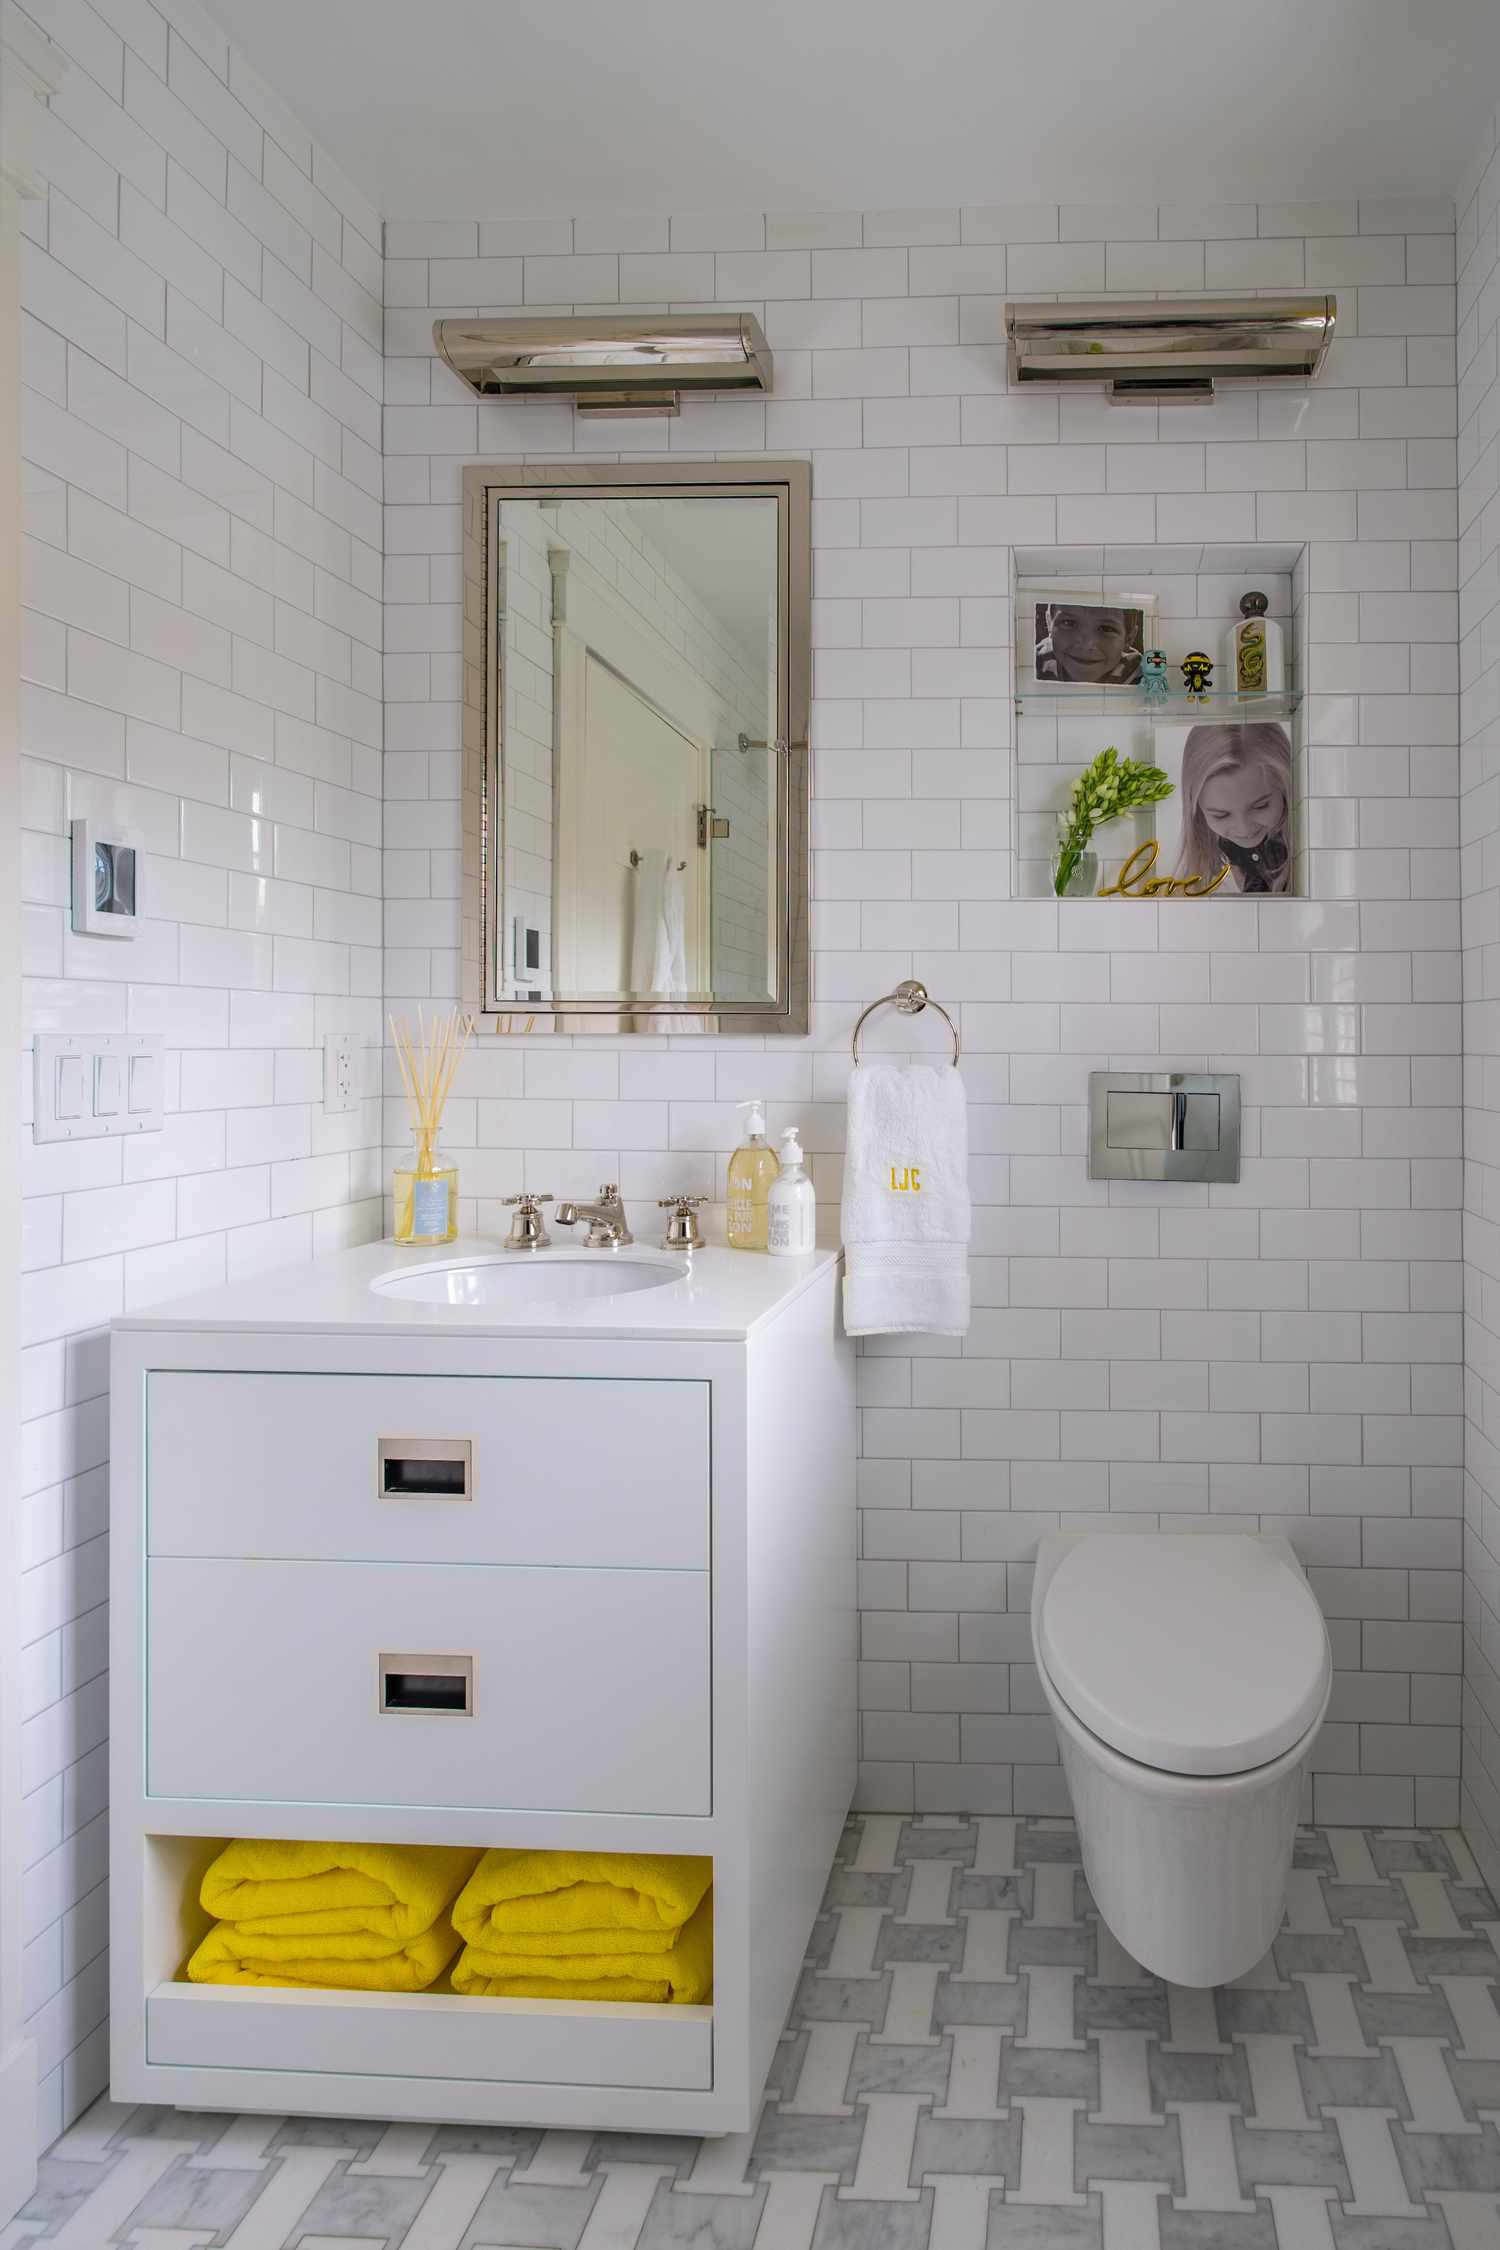 Baño blanco con azulejos de metro, accesorios cromados y toallas y accesorios amarillos 